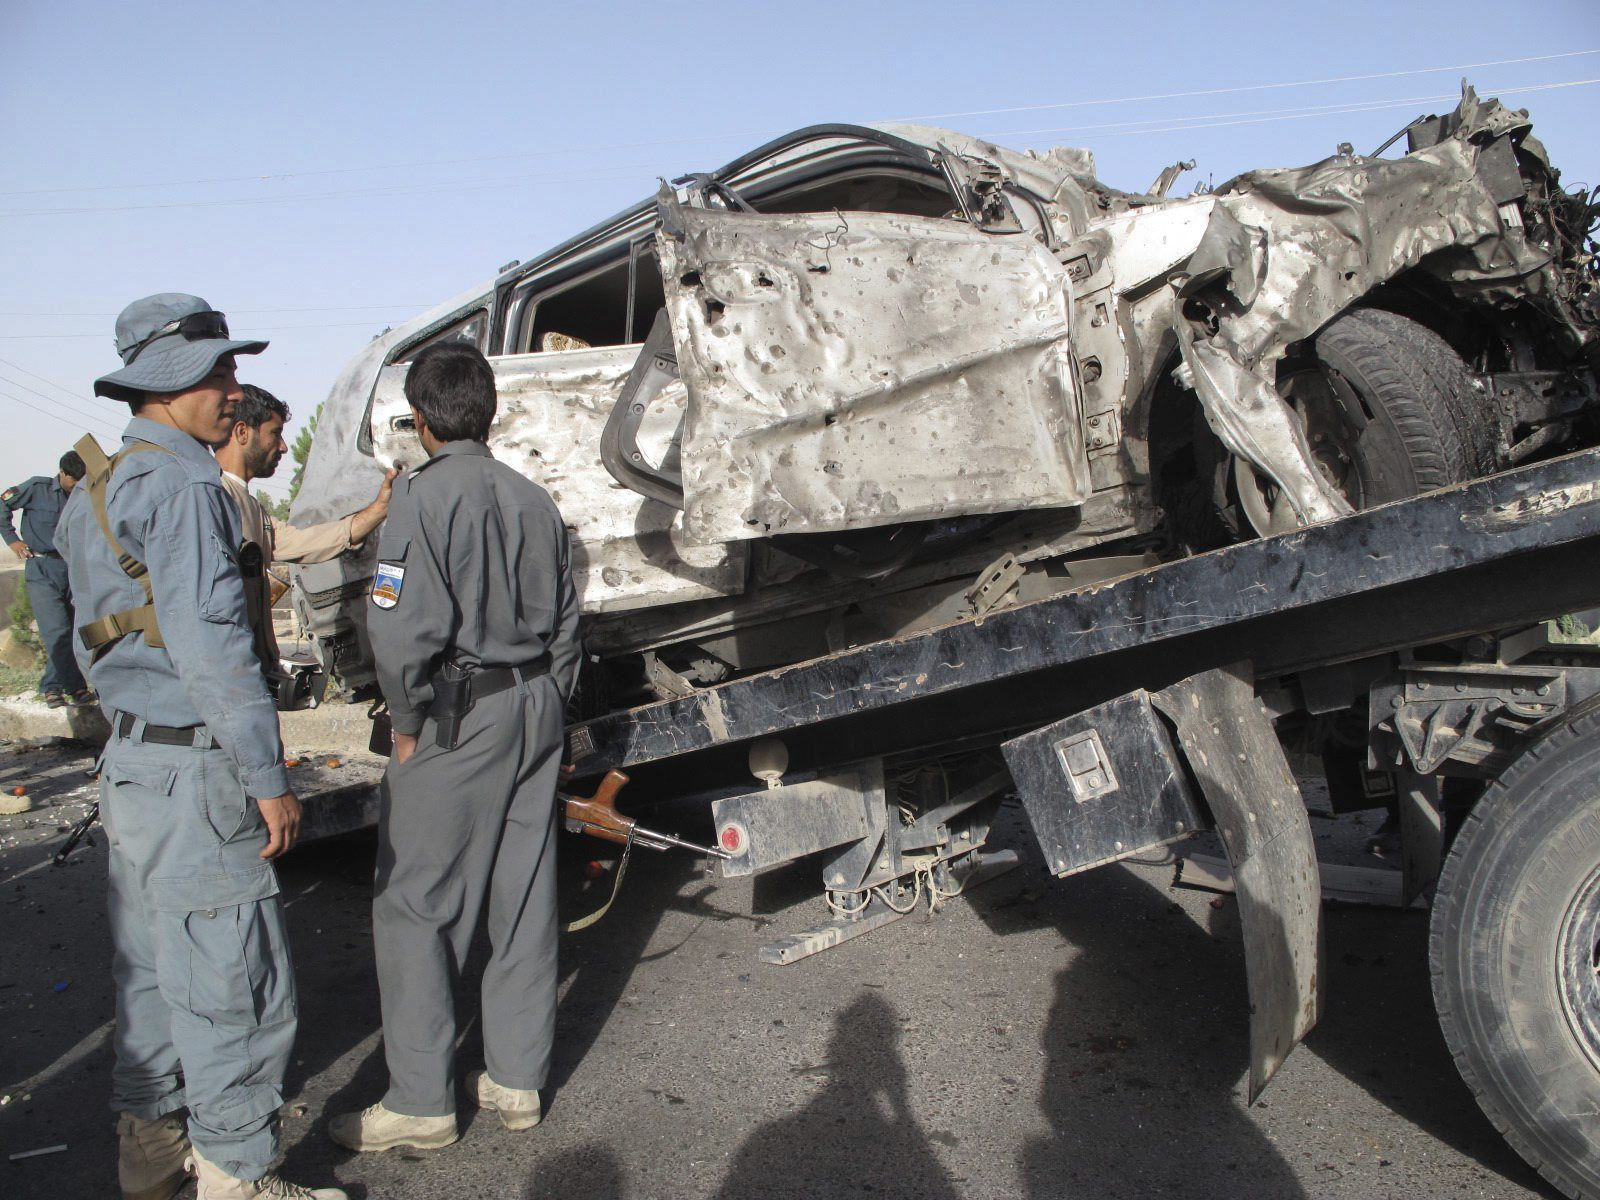 La última fase de traspaso en Afganistán será anunciada mañana, según Defensa